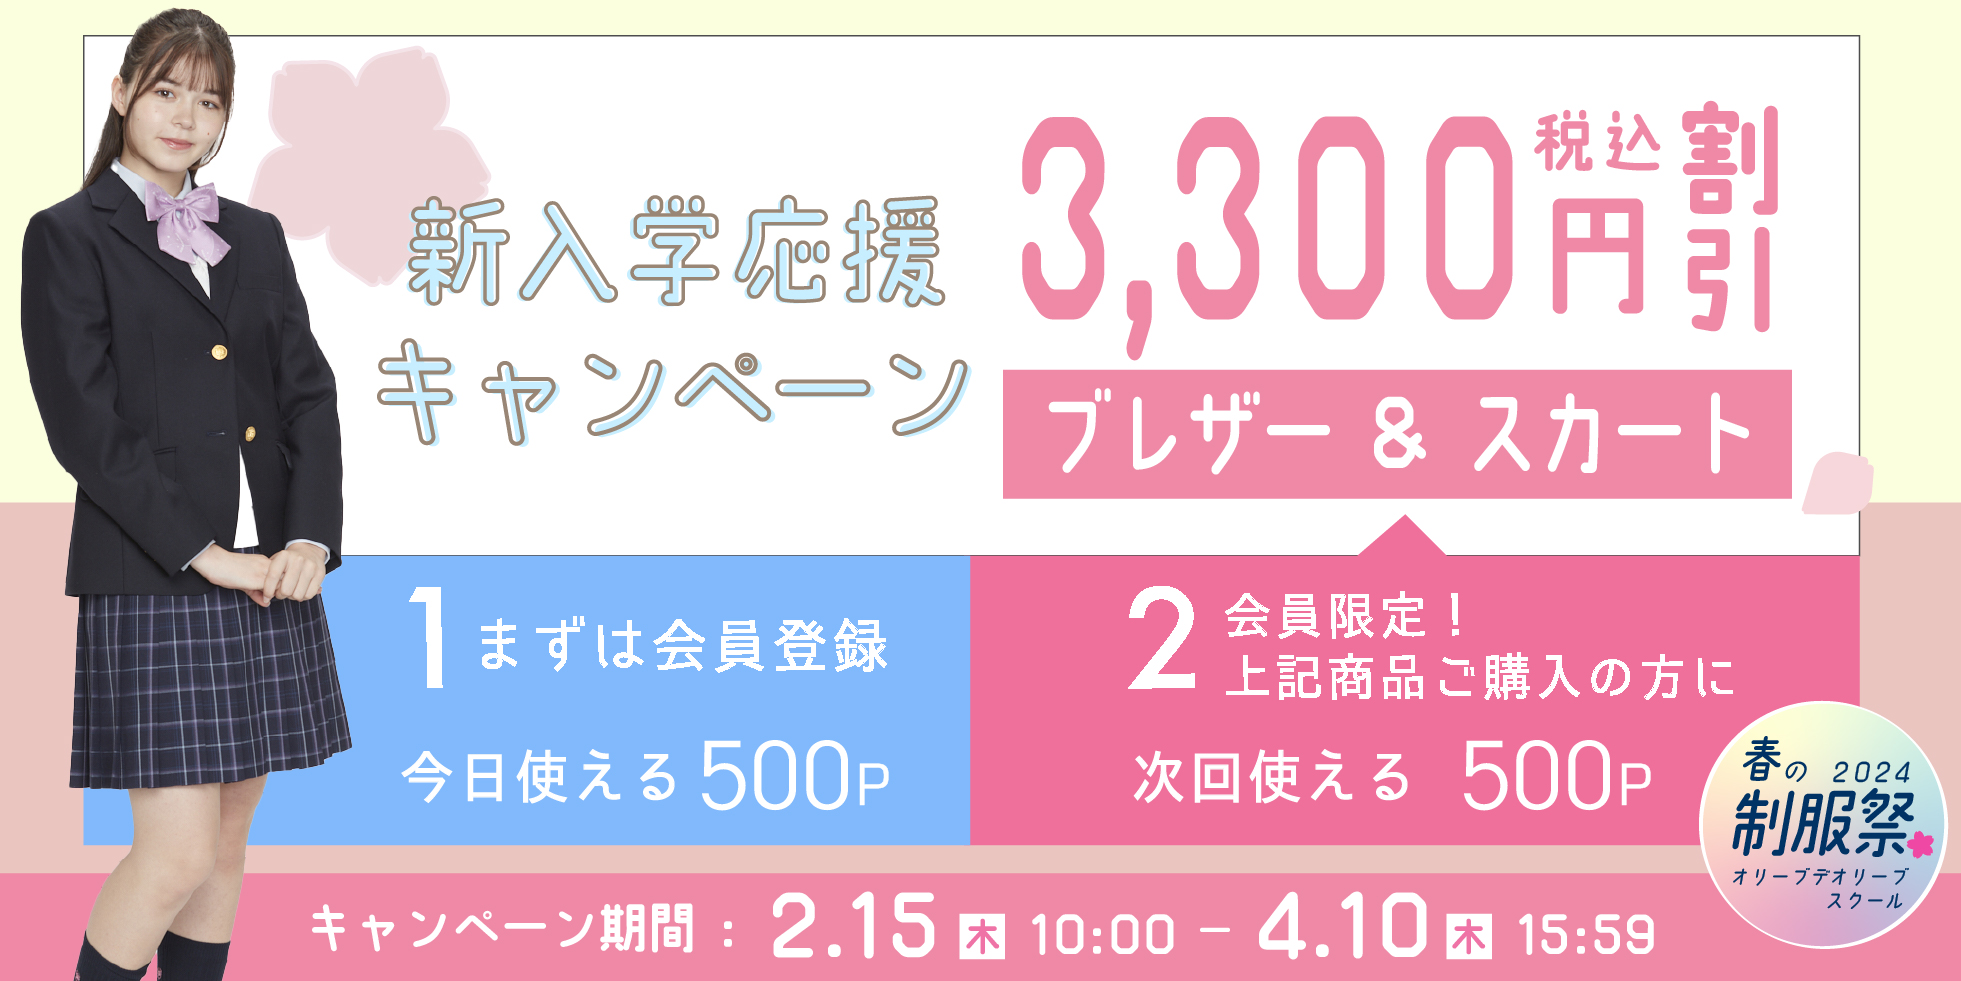 ブレザー＆スカート3,300円OFFキャンペーン